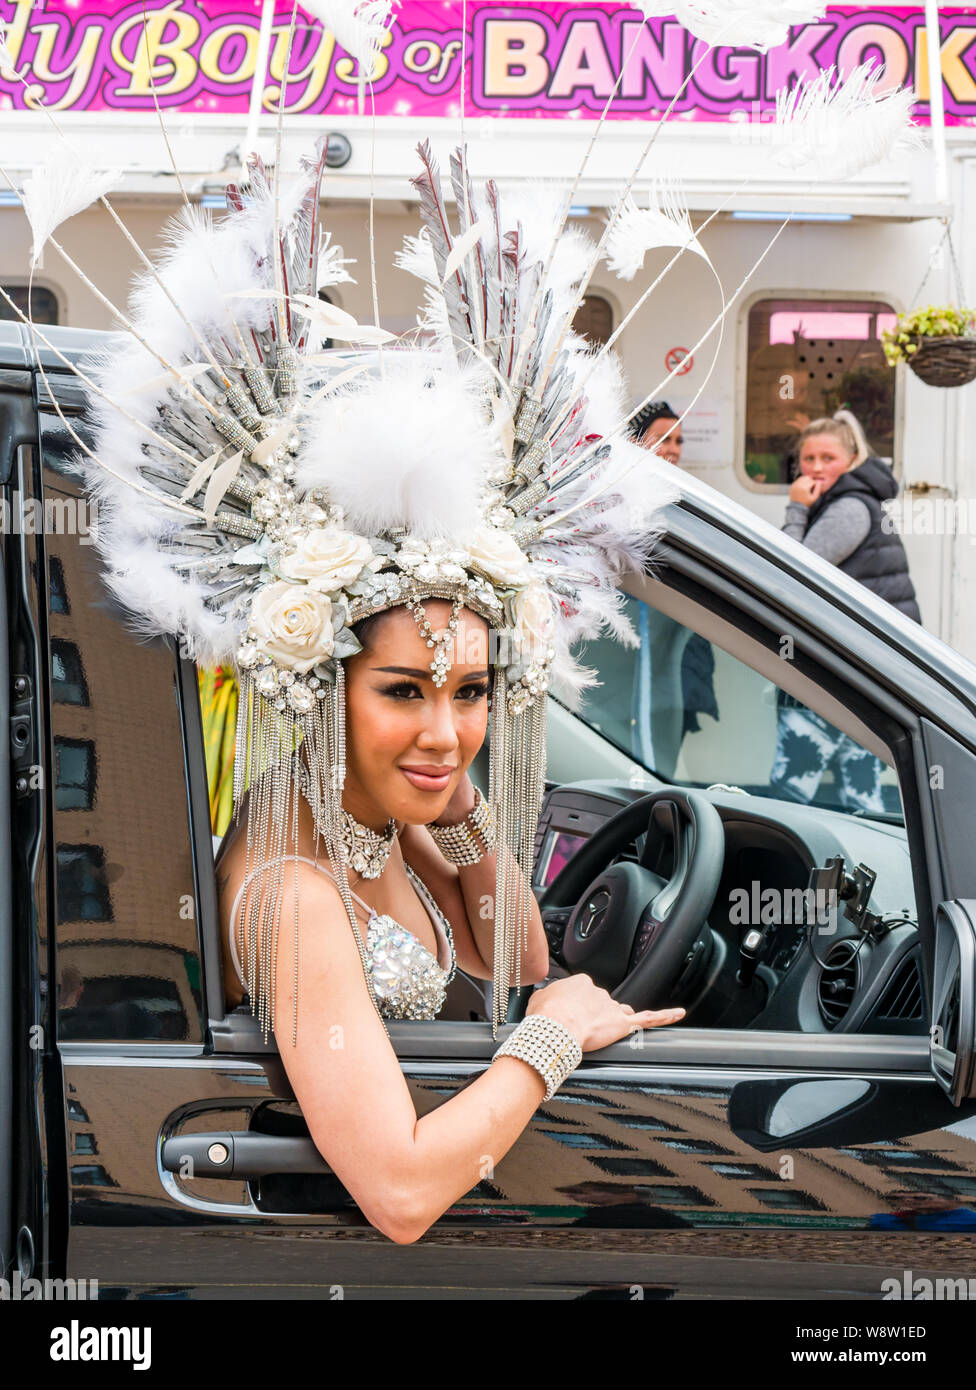 Lady Boys von Bangkok, Edinburgh Festival Fringe, Schottland, UK als Künstler ziehen das Tragen von kunstvollen Kopfschmuck sitzt im Taxi Geld für wohltätige Zwecke Stockfoto